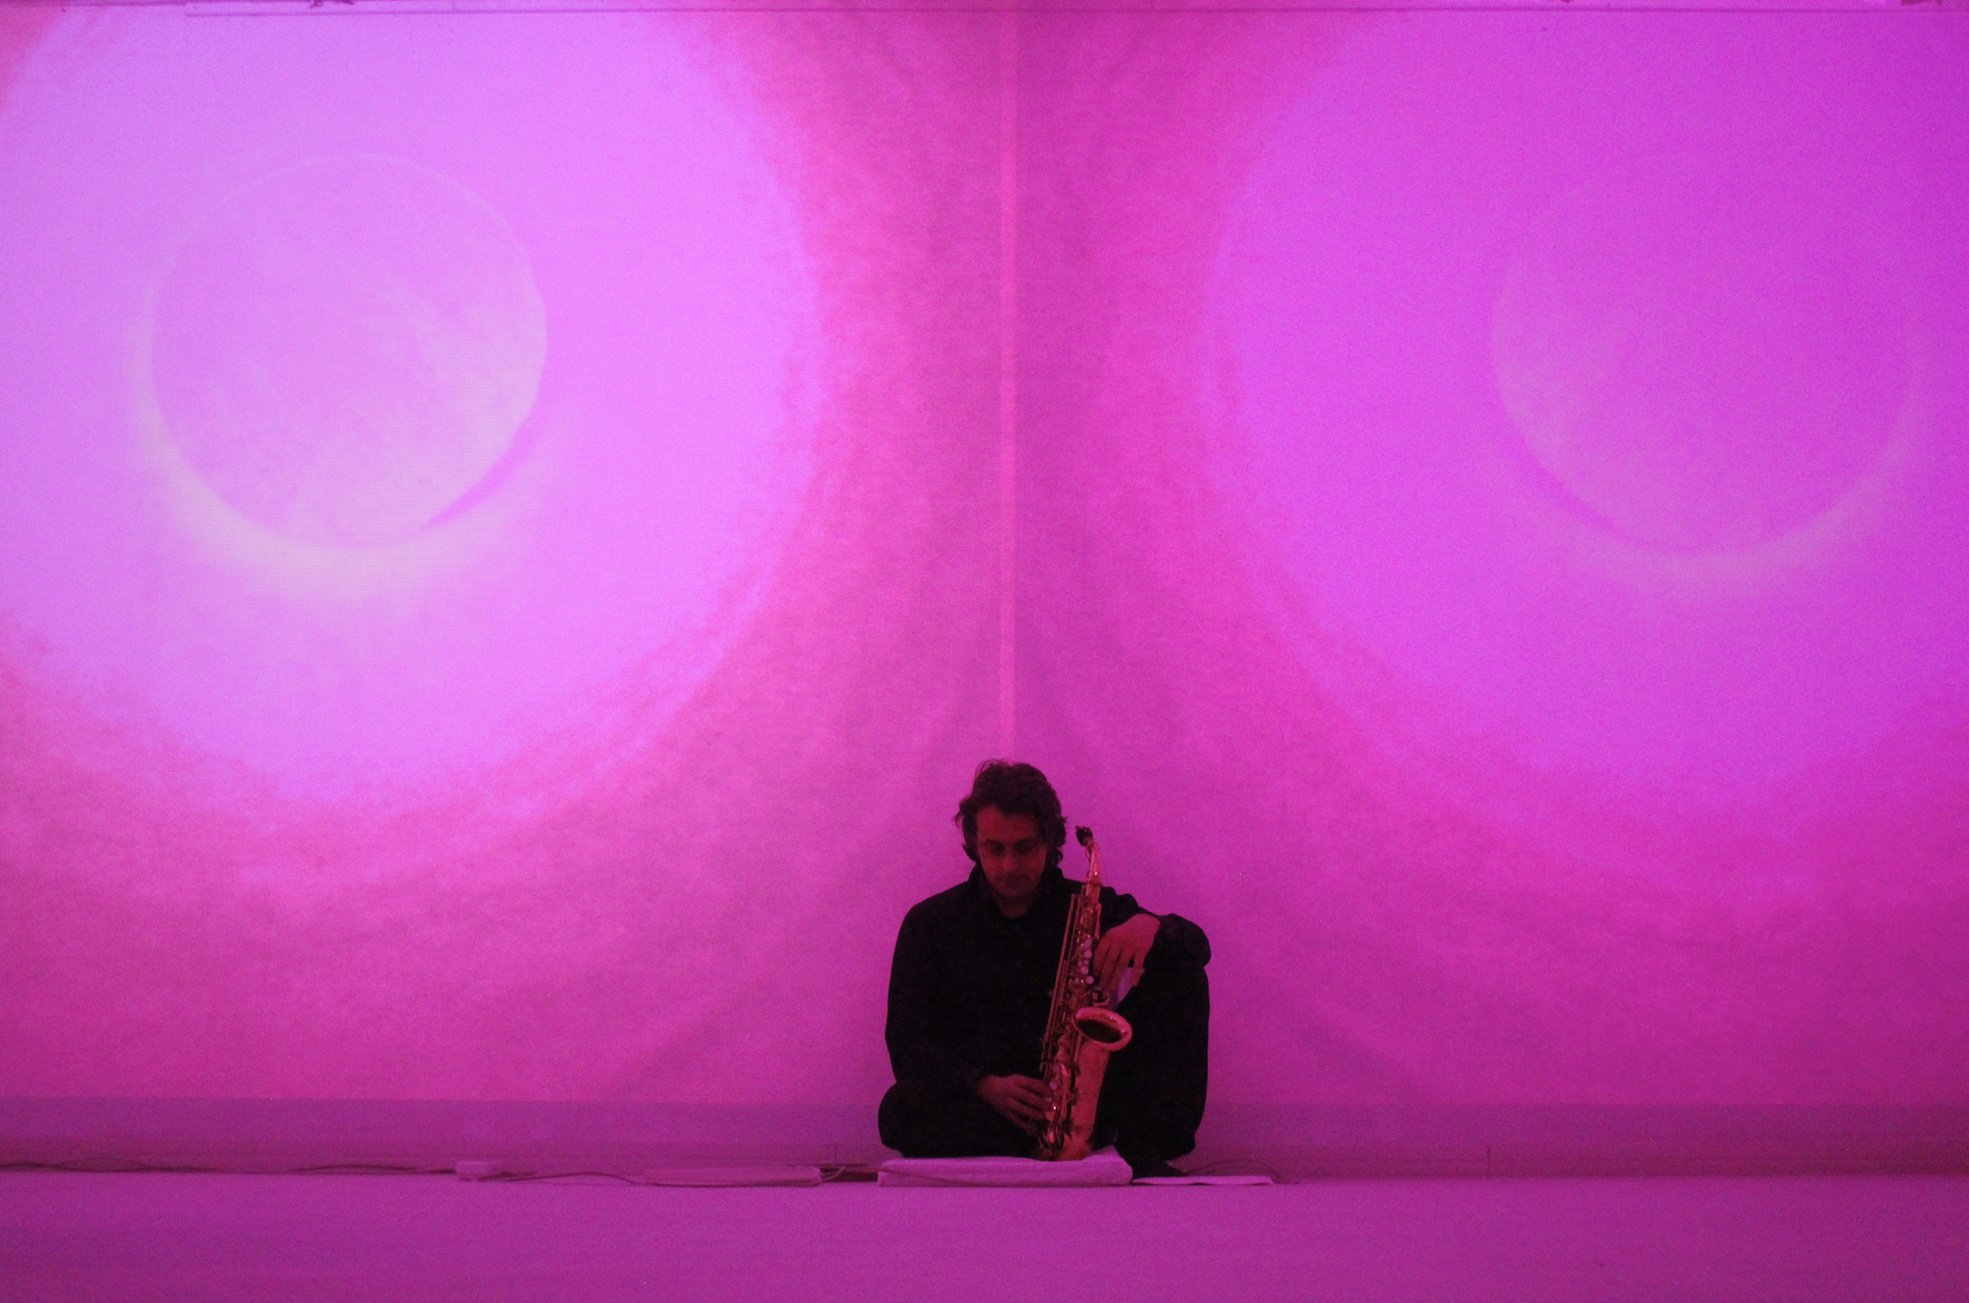 Della Marina - Zucchi, A Place to Play, live sound installation at Spazioersetti, 2015